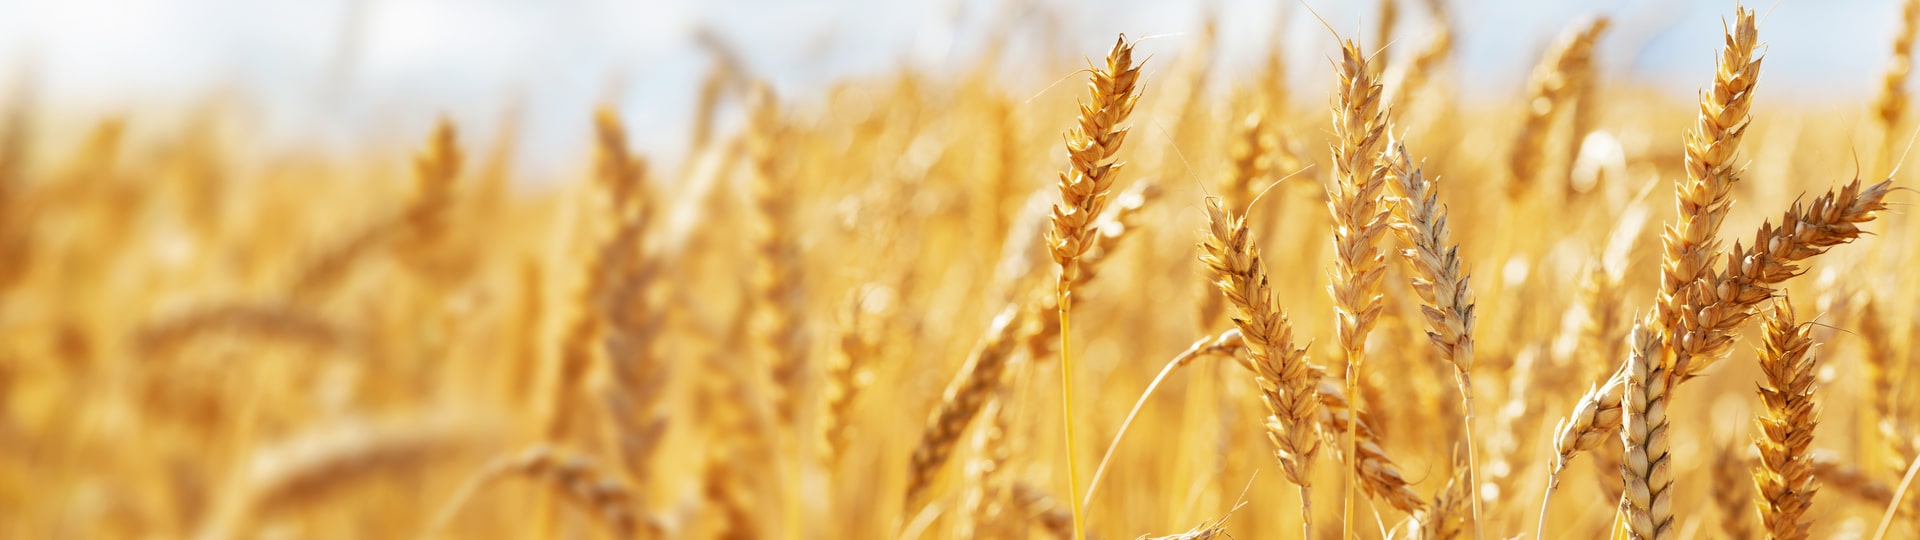 Indie může změnit světový obchod s pšenicí